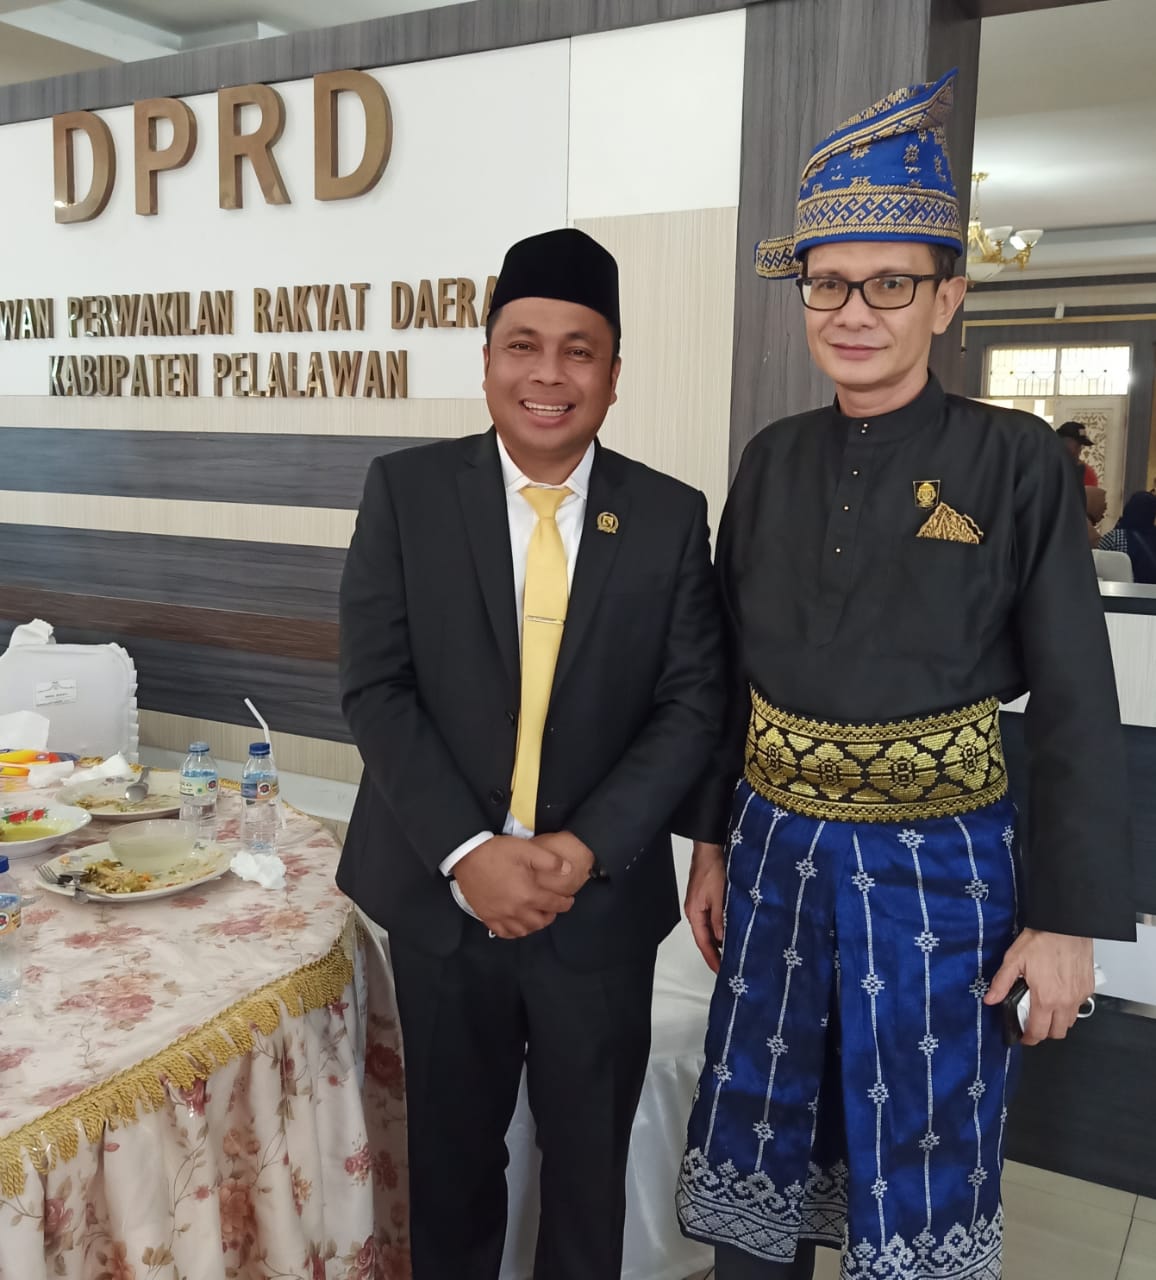 Mantan Kader PAN akhirnya dilantik menjadi Ketua DPRD Pelalawan